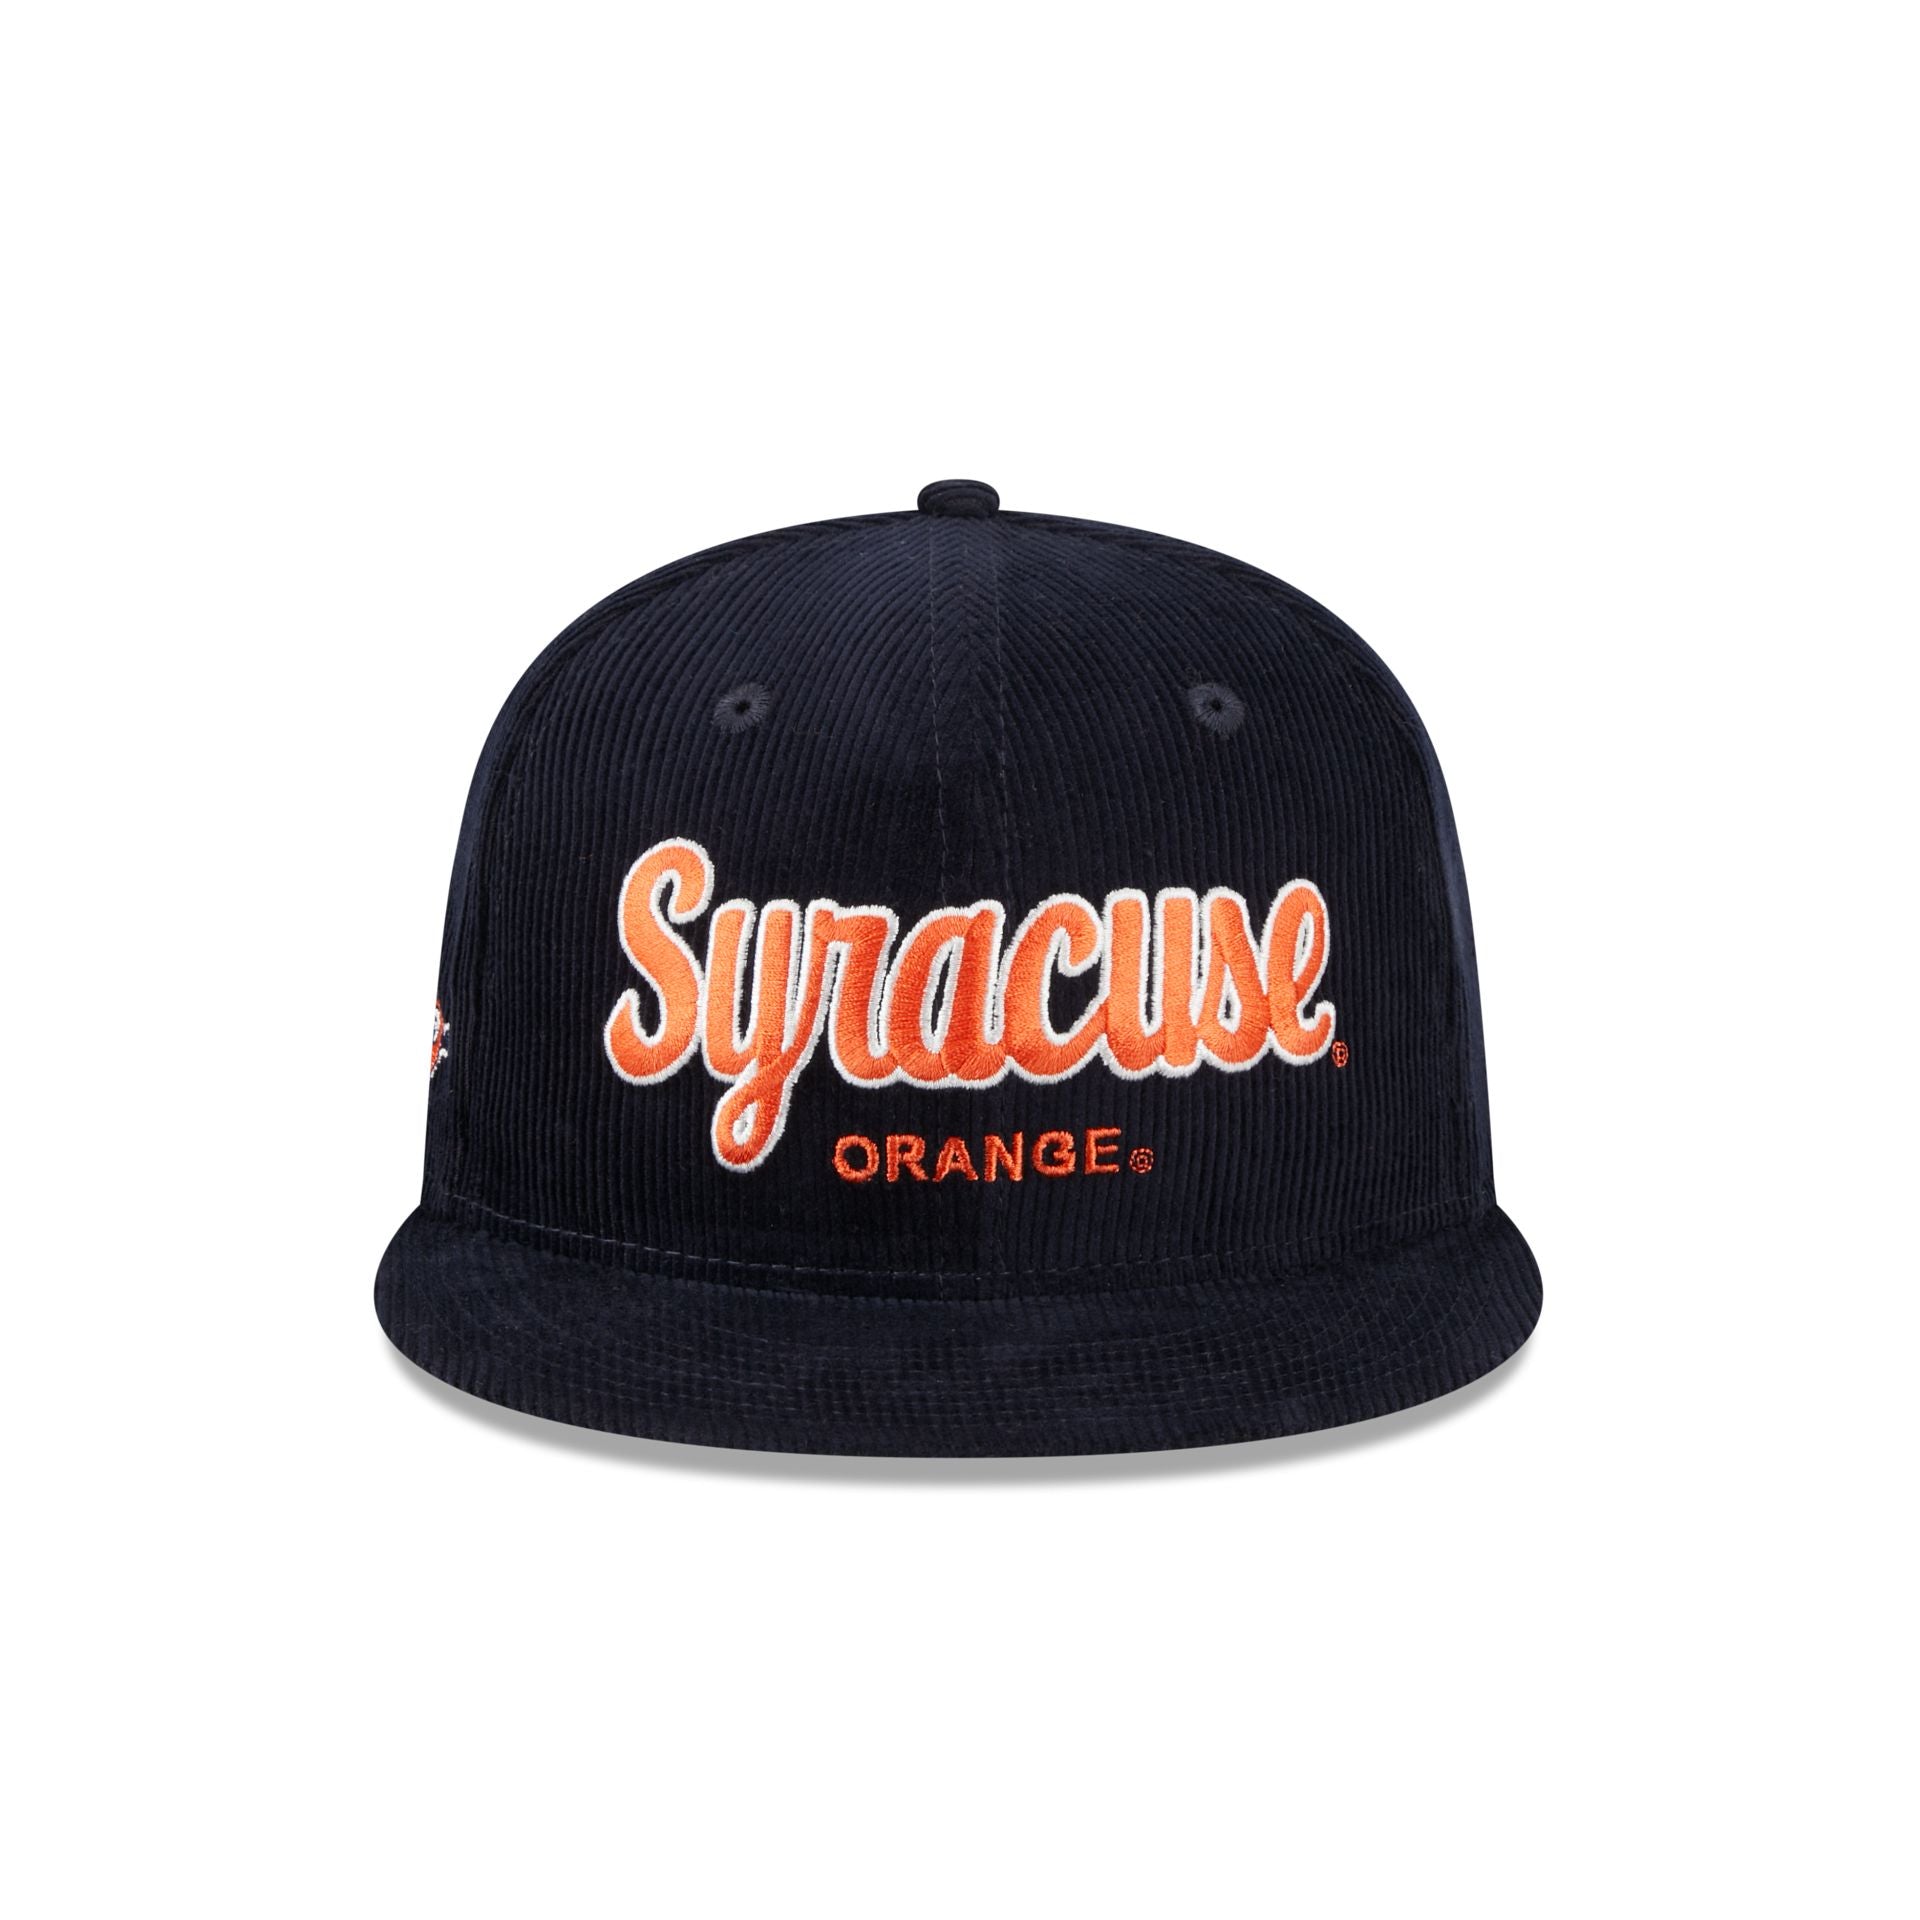 Vintage Louisville Slugger New Era Snapback Hat Cap Adjustable